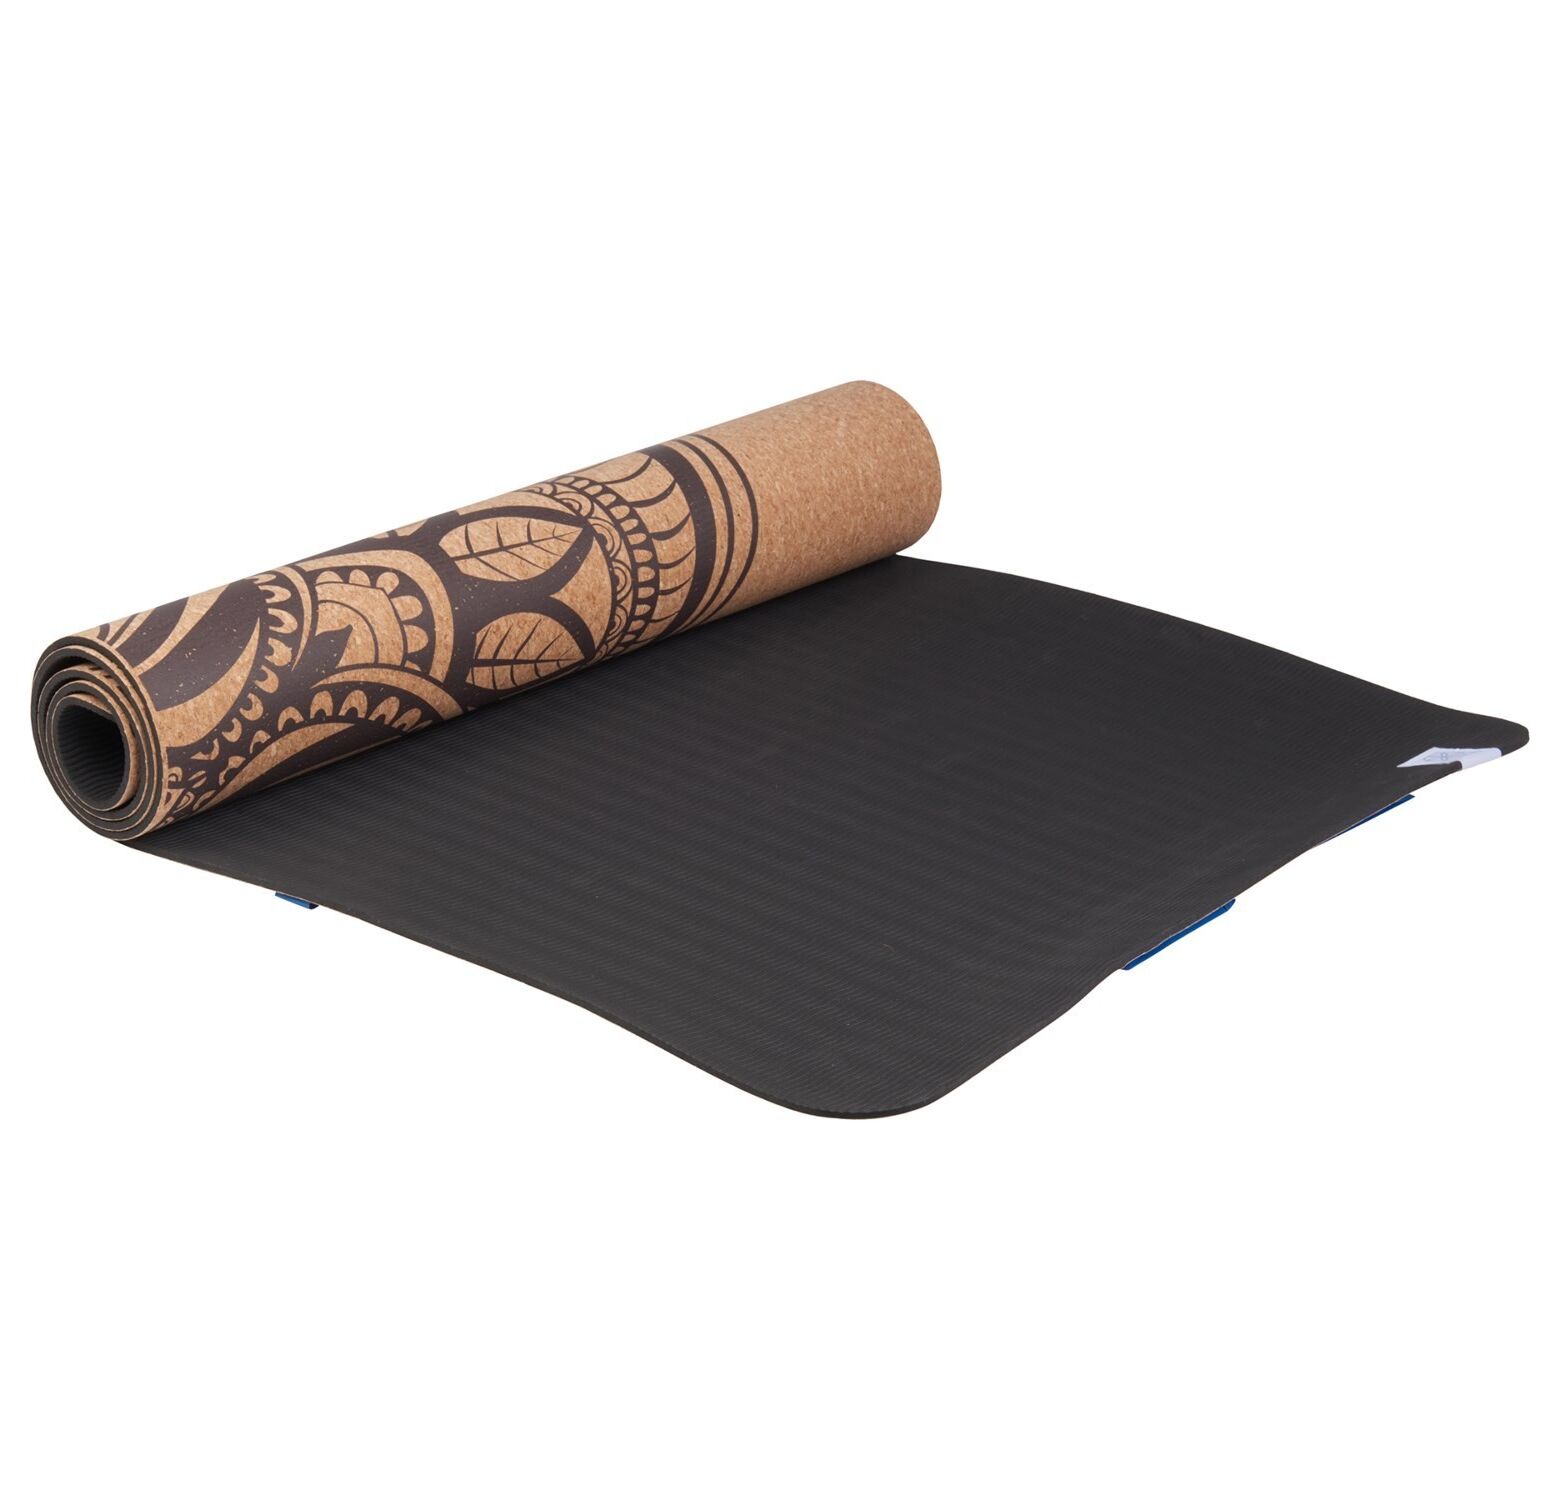 GAIAM 6 mm TPE Yoga Mat Lake Performance - Yoga mat